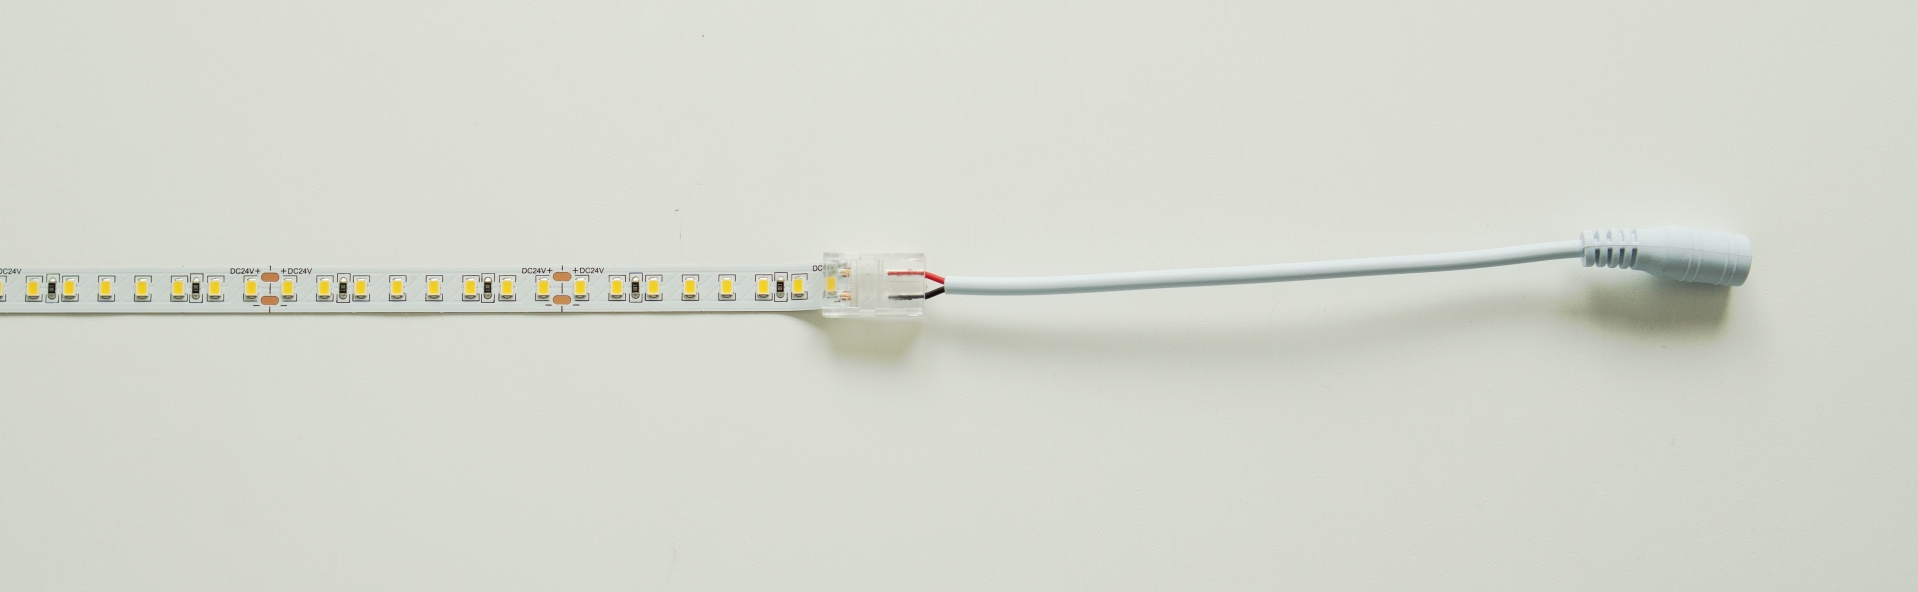 Anschlussdiagramm von LED-Streifen über einen doppelseitigen Stecker mit Buchse